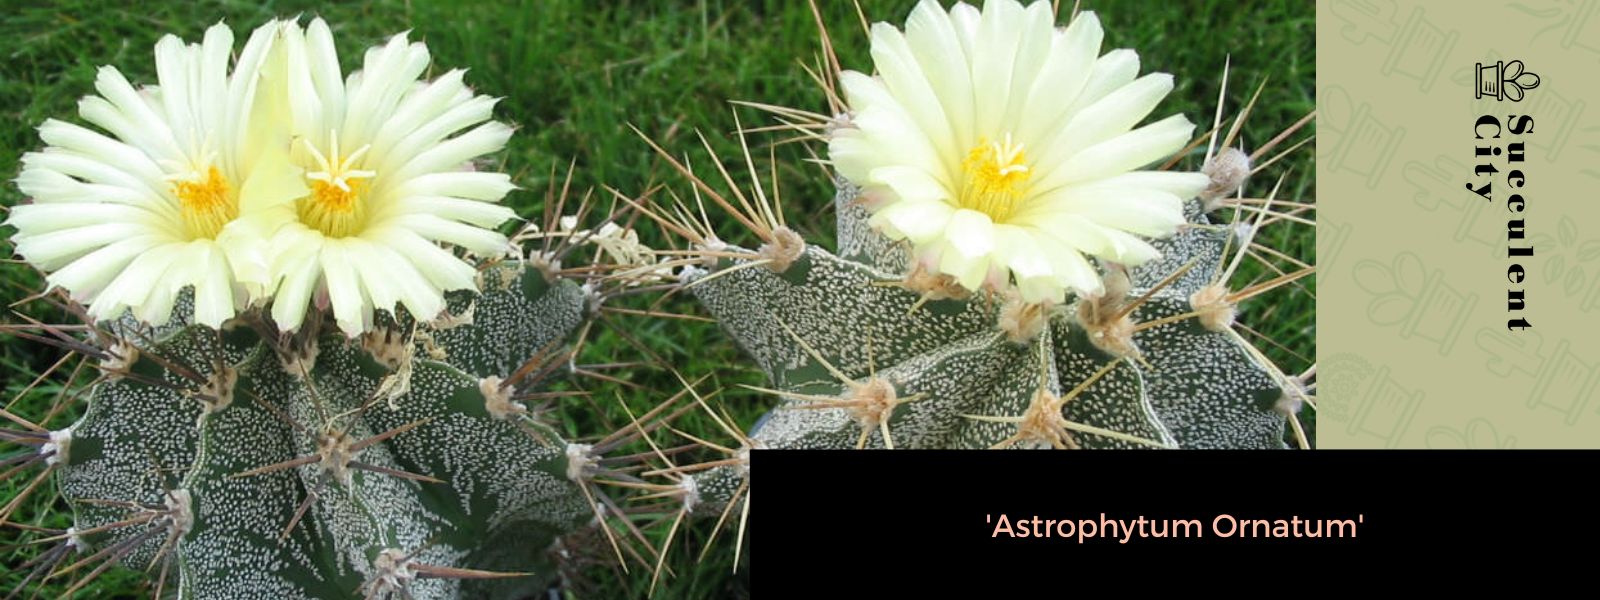 El cactus capucho del monje 'Asphytum Ornatum'